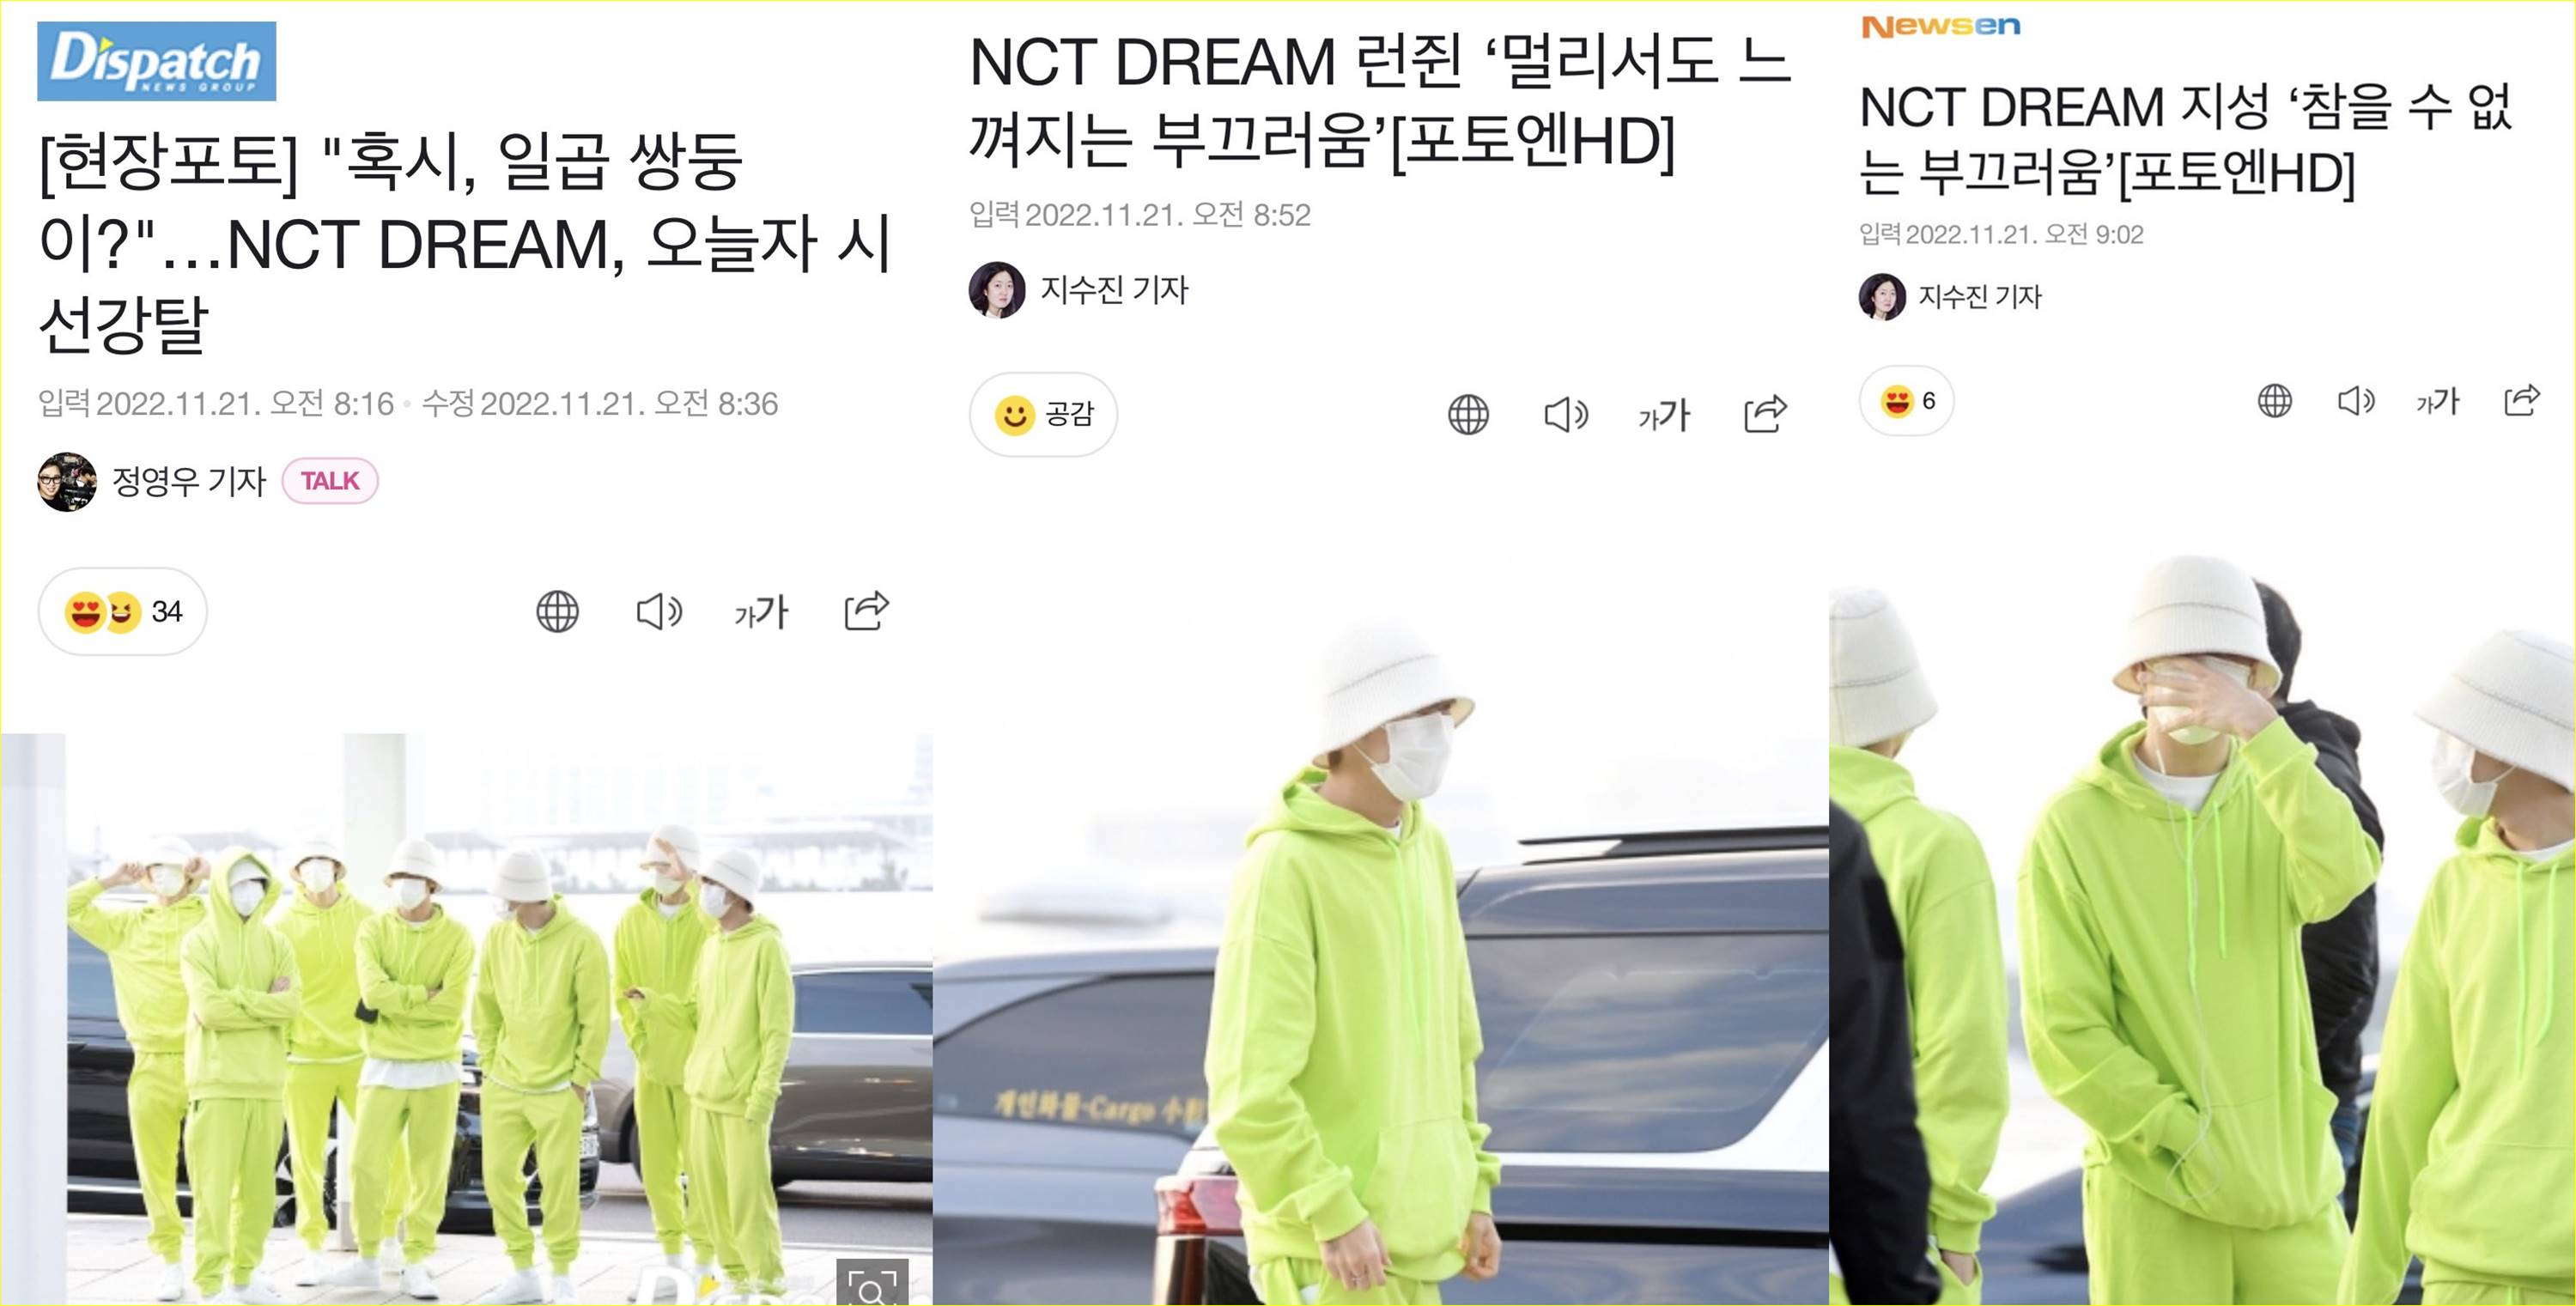 Pemberitaan media Korea Selatan terkait NCT Dream tampil dengan gaya neon